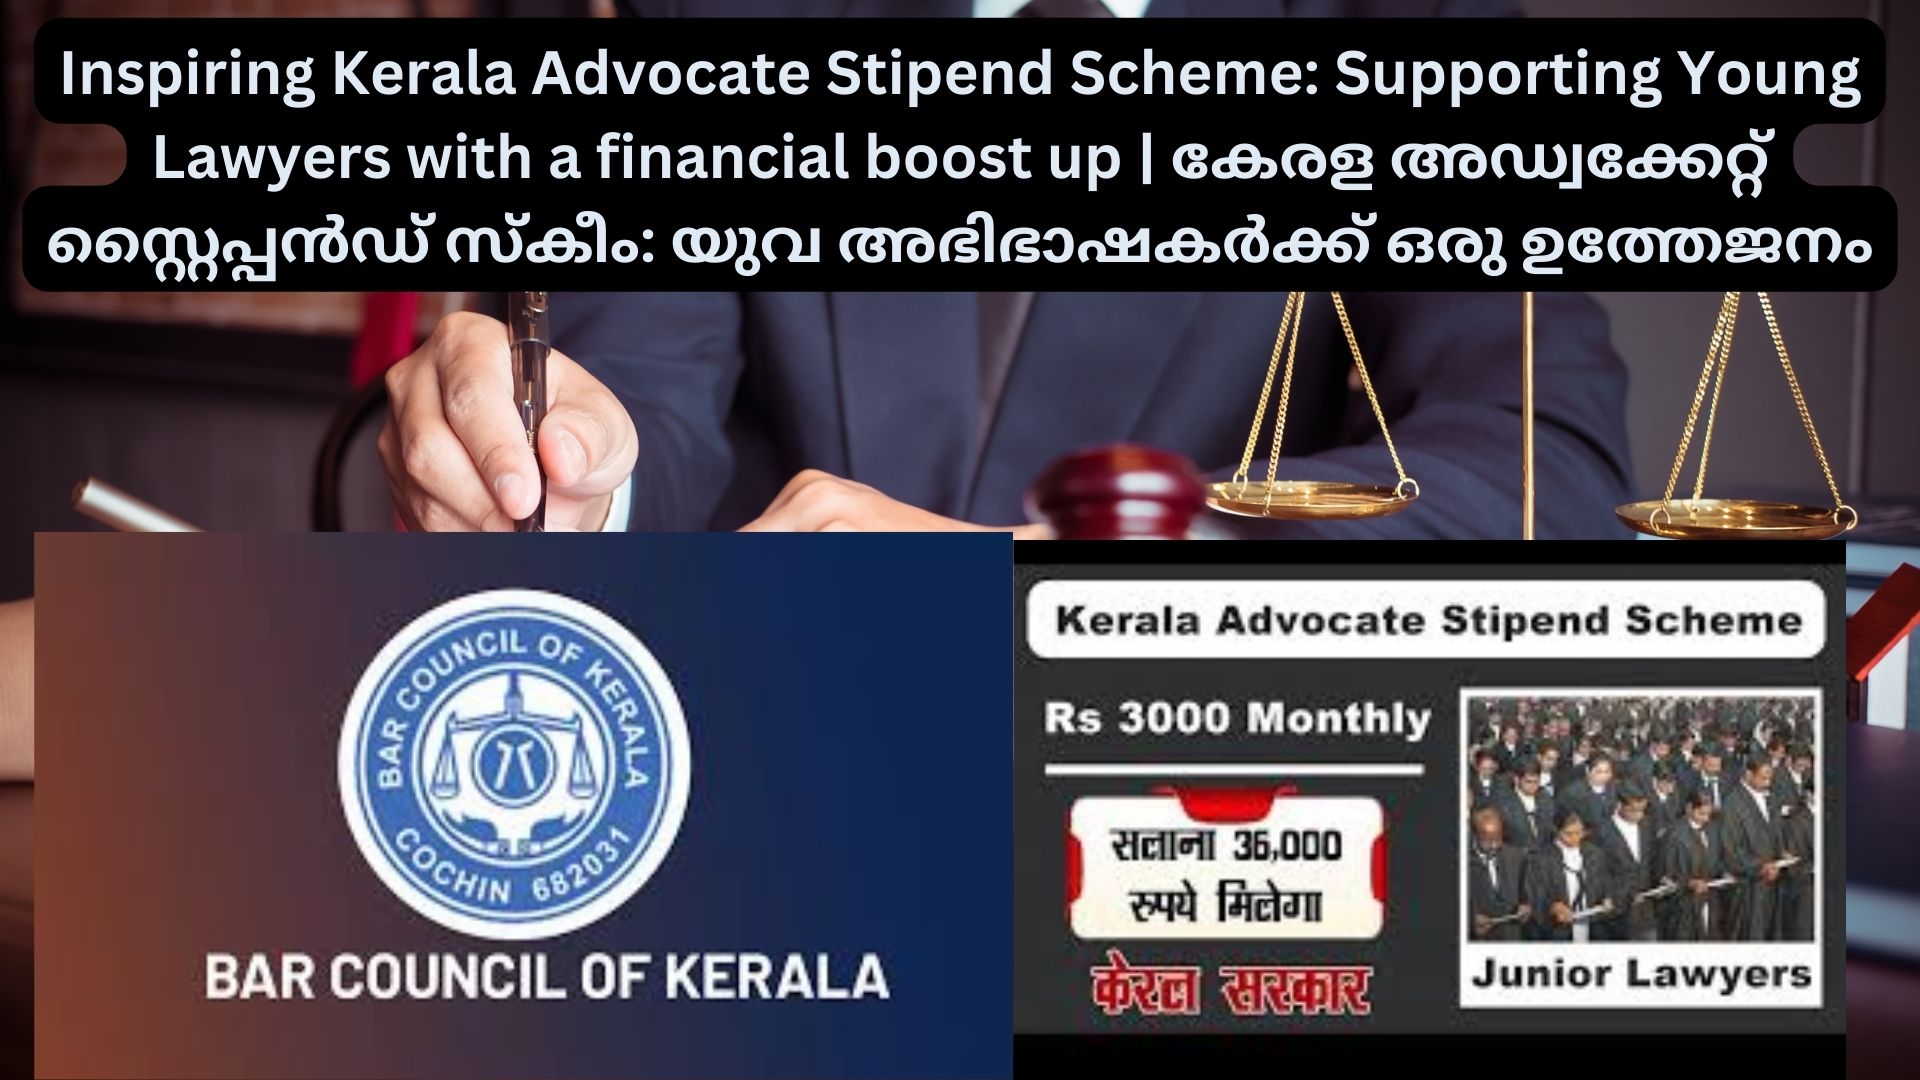 Inspiring Kerala Advocate Stipend Scheme: Supporting Young Lawyers with a financial boost up | കേരള അഡ്വക്കേറ്റ് സ്റ്റൈപ്പൻഡ് സ്കീം: യുവ അഭിഭാഷകർക്ക് ഒരു ഉത്തേജനം